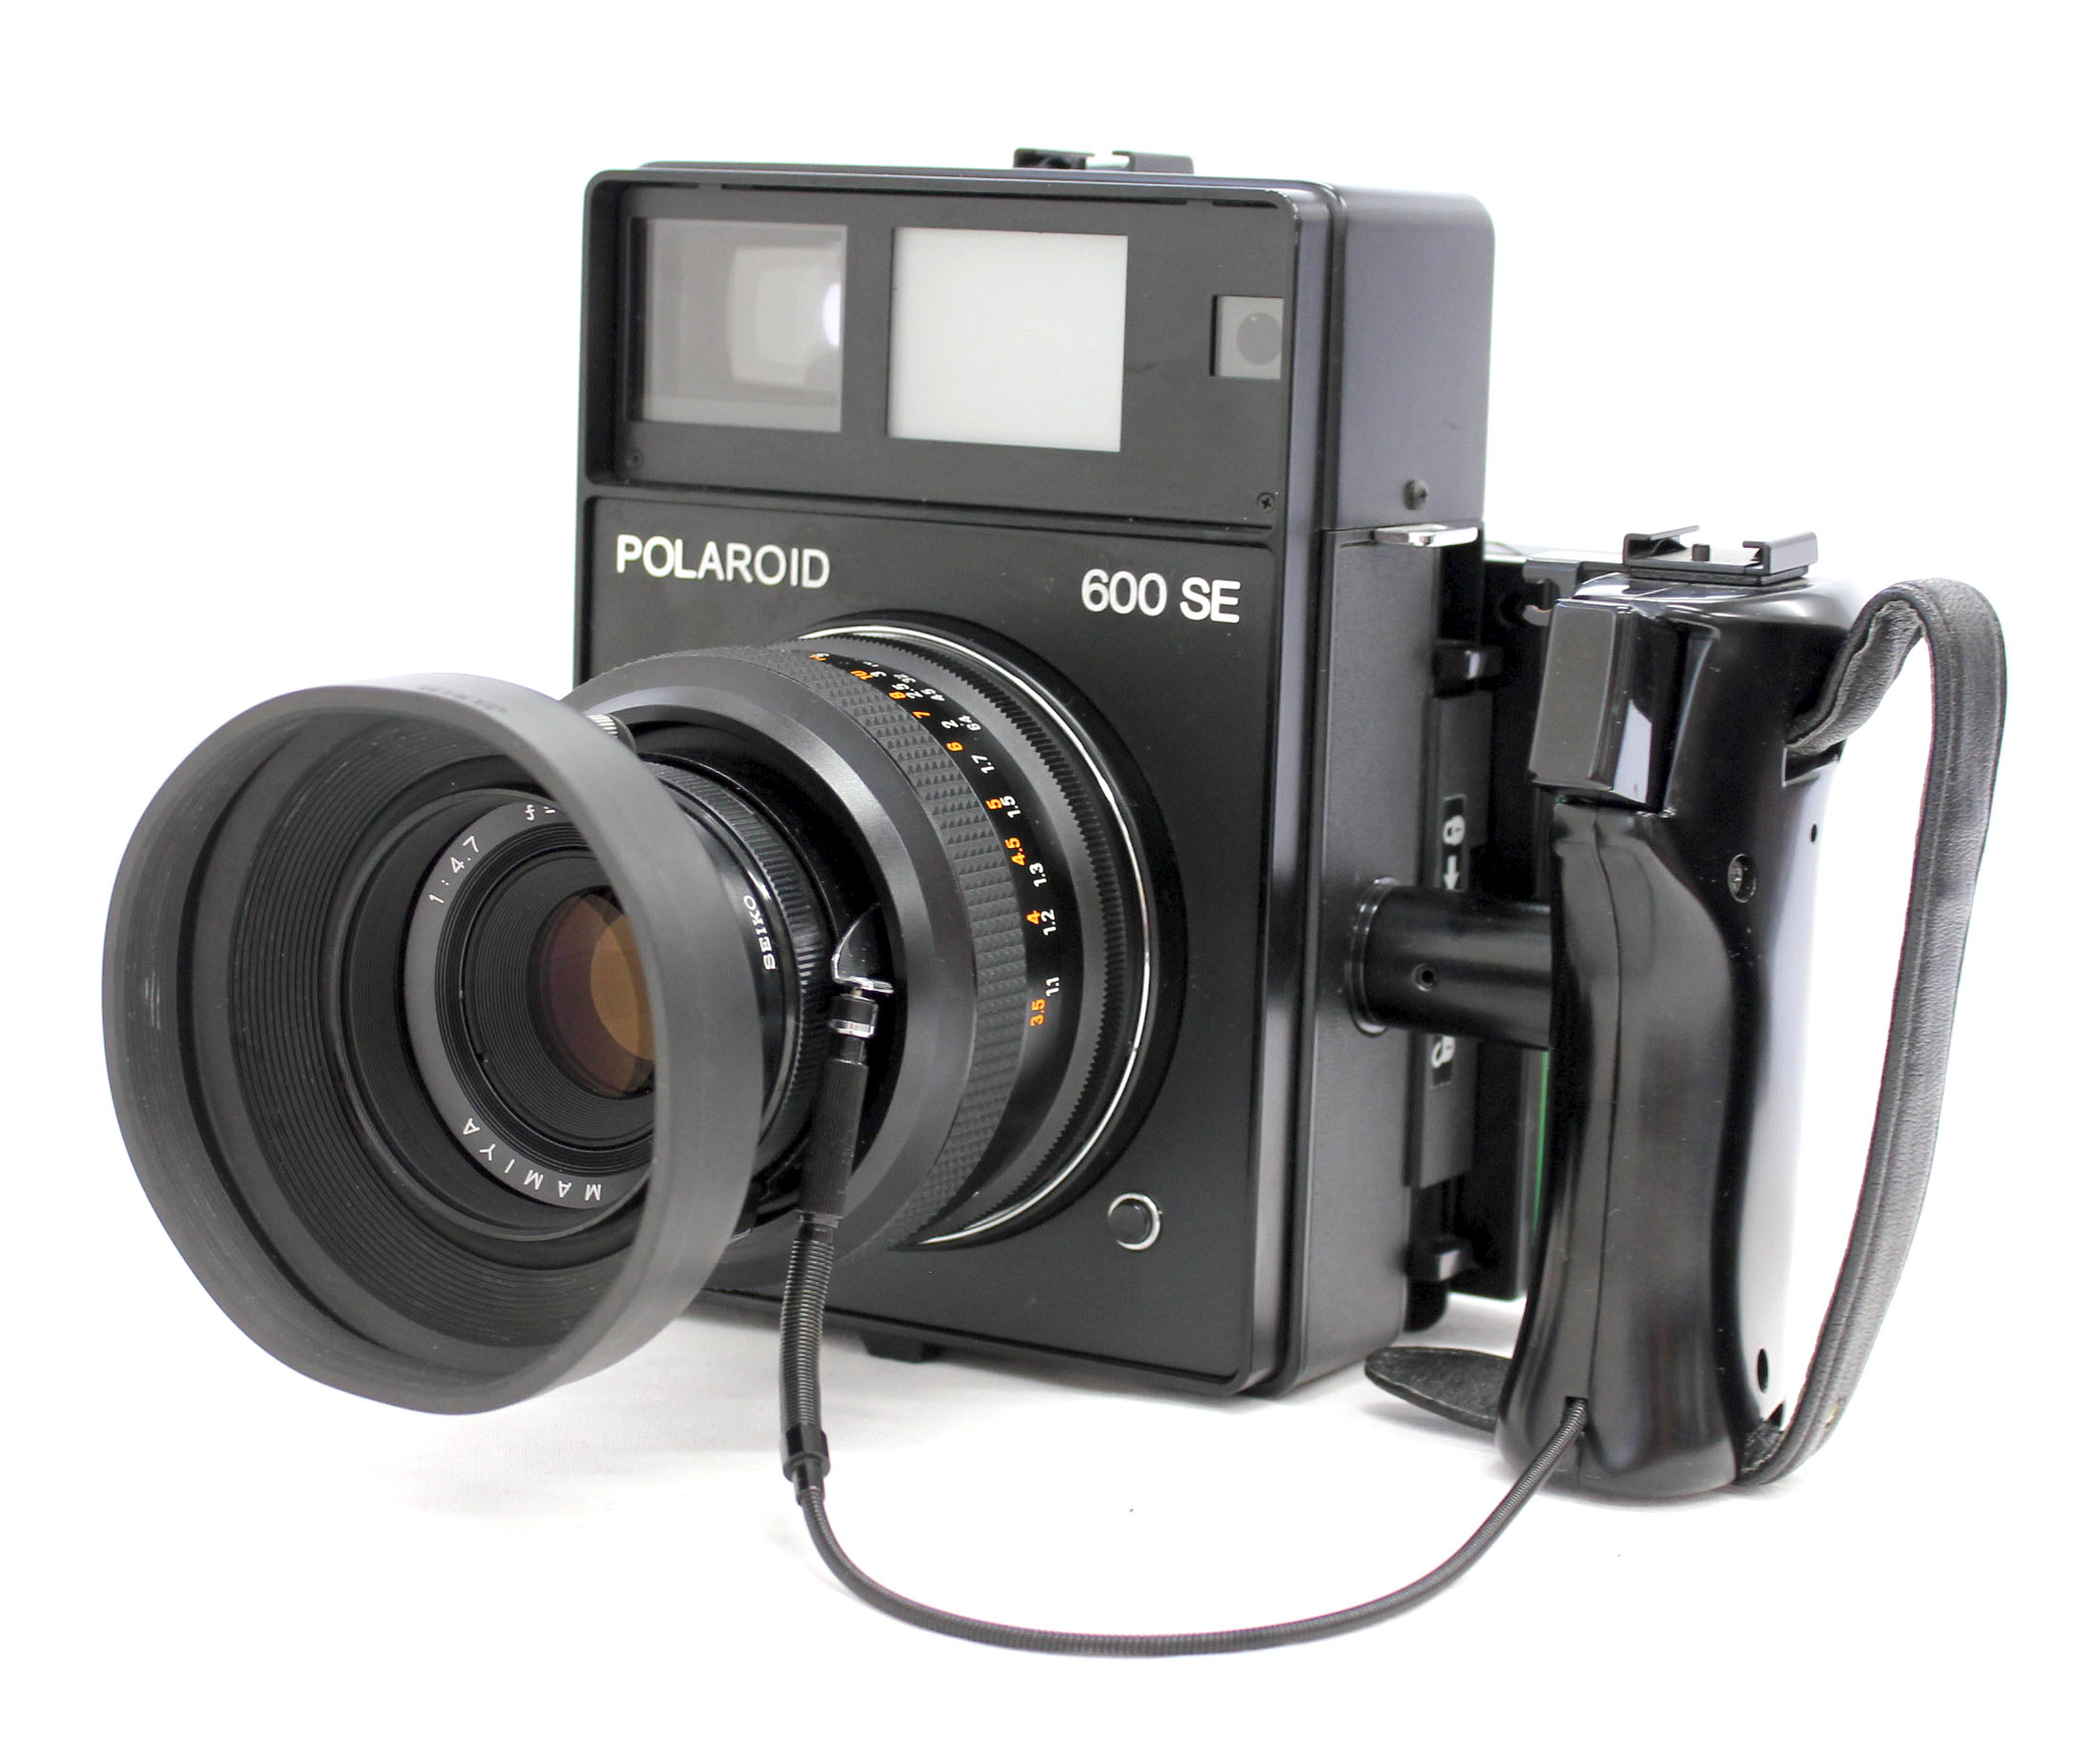  Polaroid 600SE Instant Camera w/ Mamiya 127mm F/4.7 Lens and Polaroid Back from Japan Photo 0